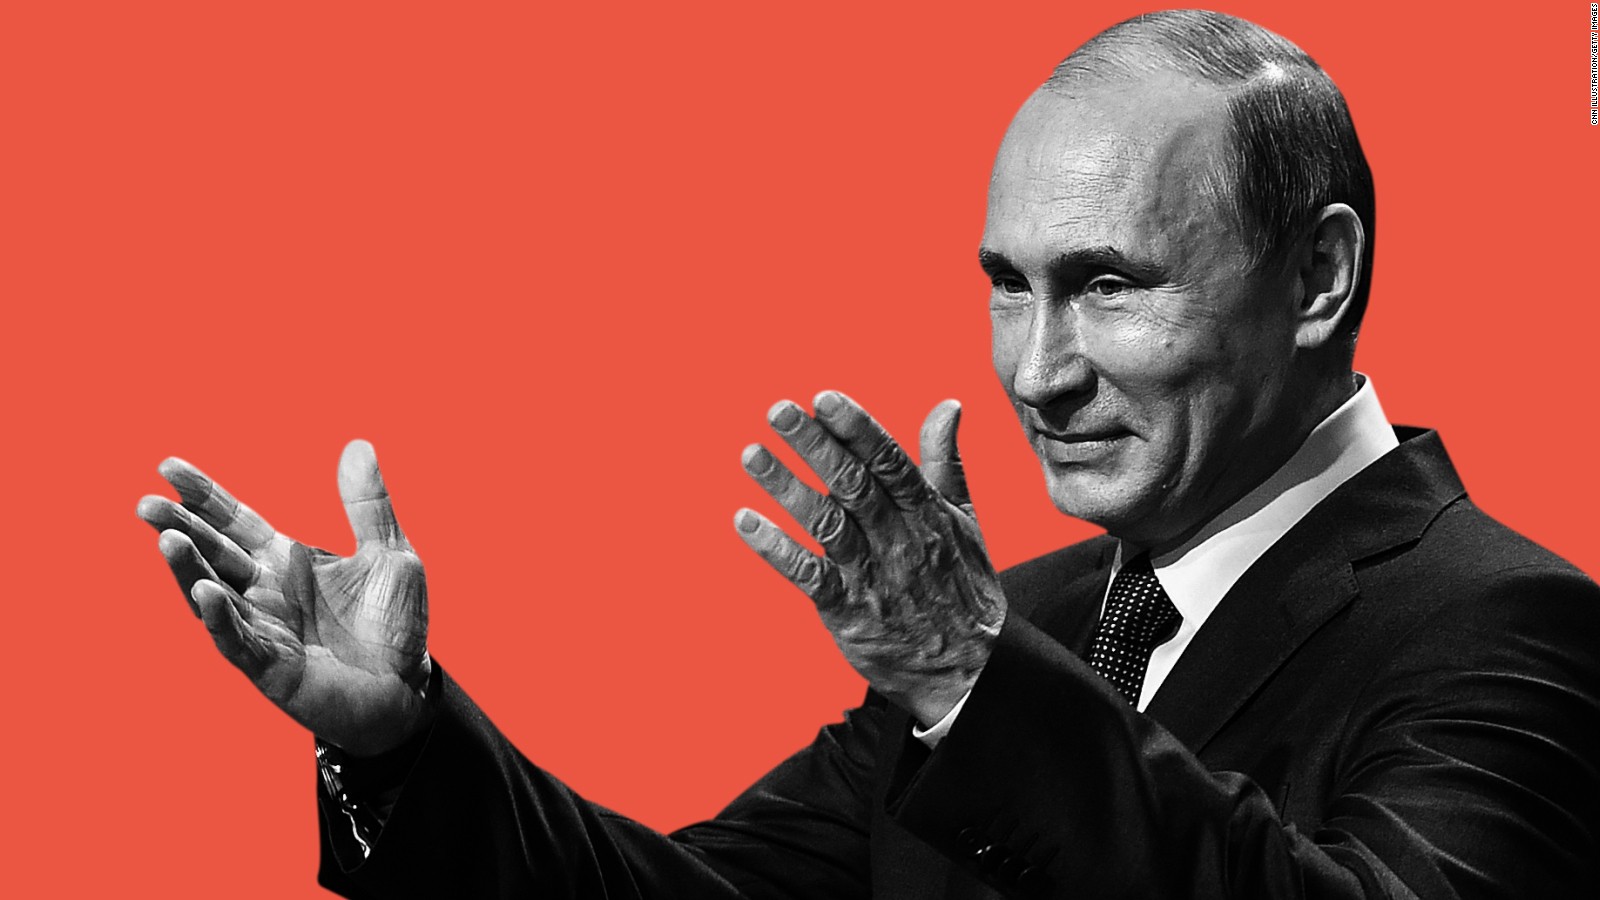 Putin uron Bidenin për fitoren në zgjedhje